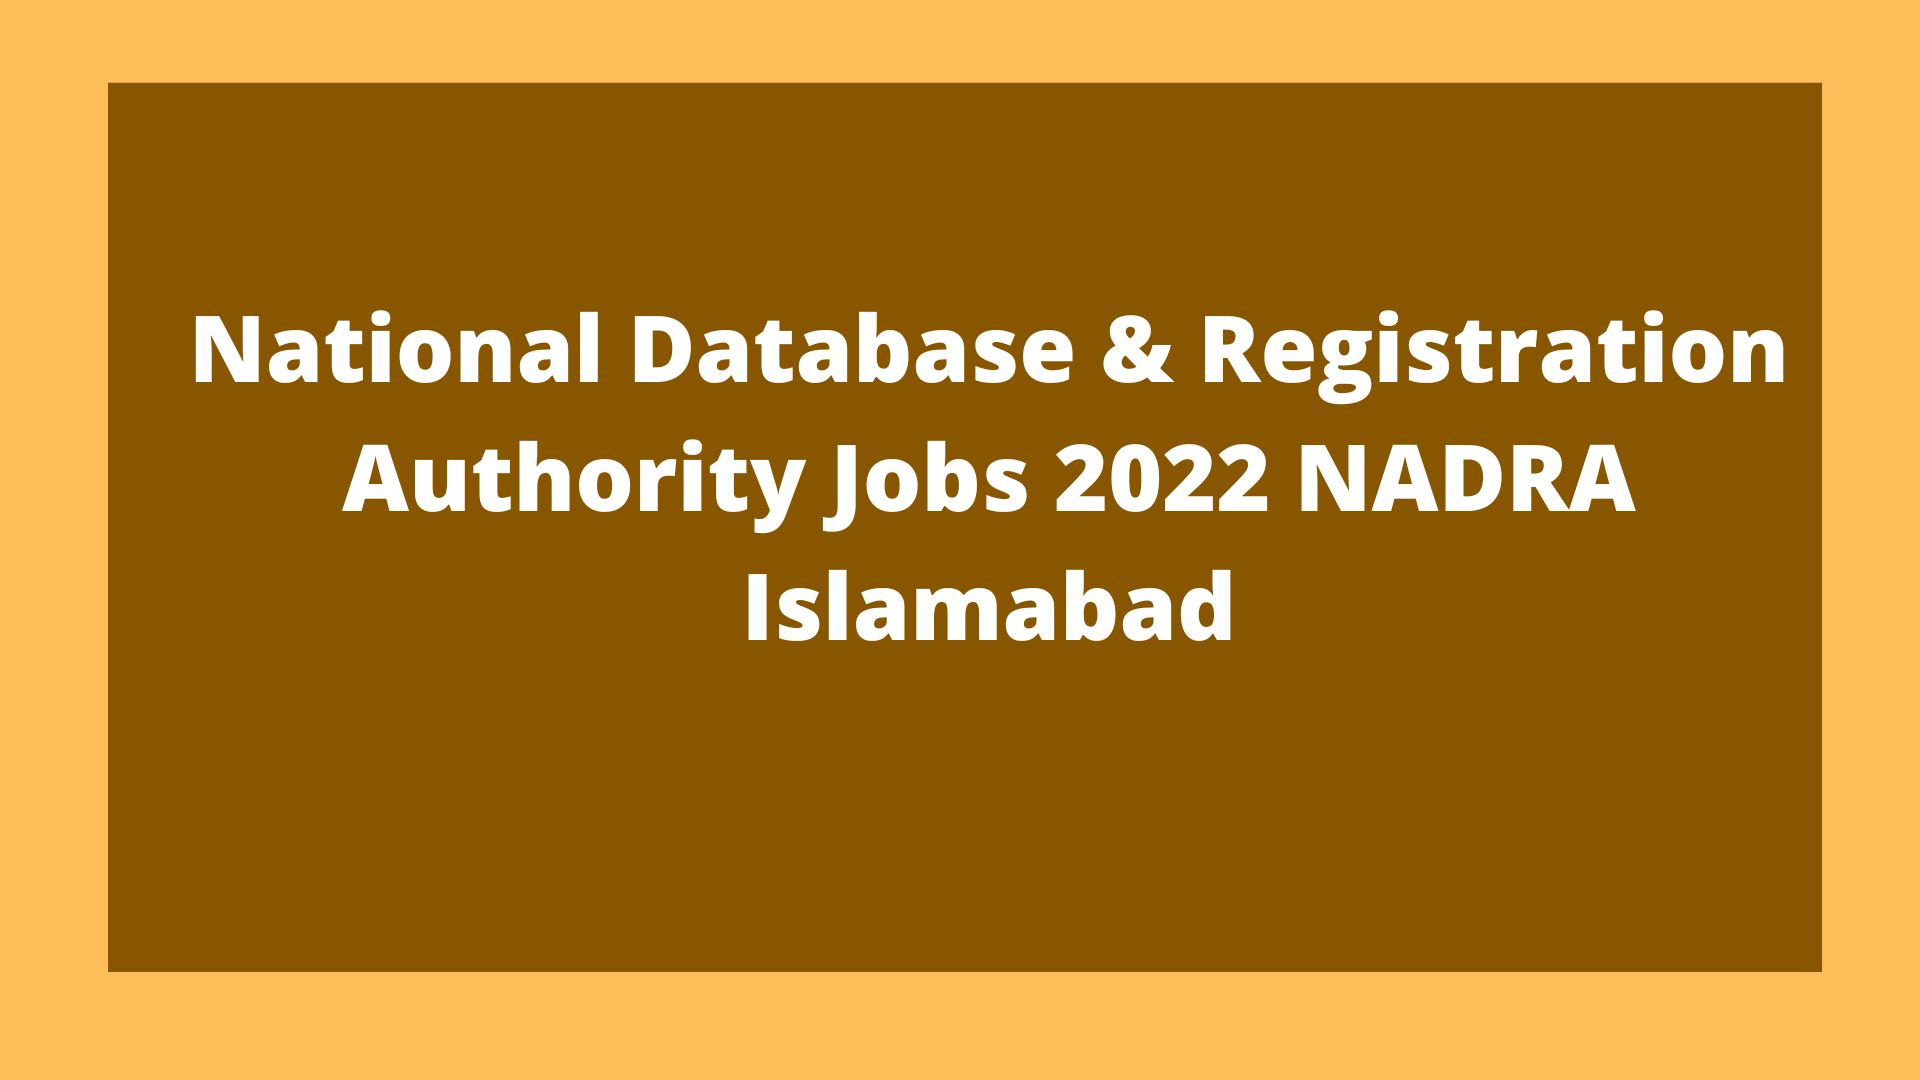 National Database & Registration Authority Jobs 2022 NADRA Islamabad